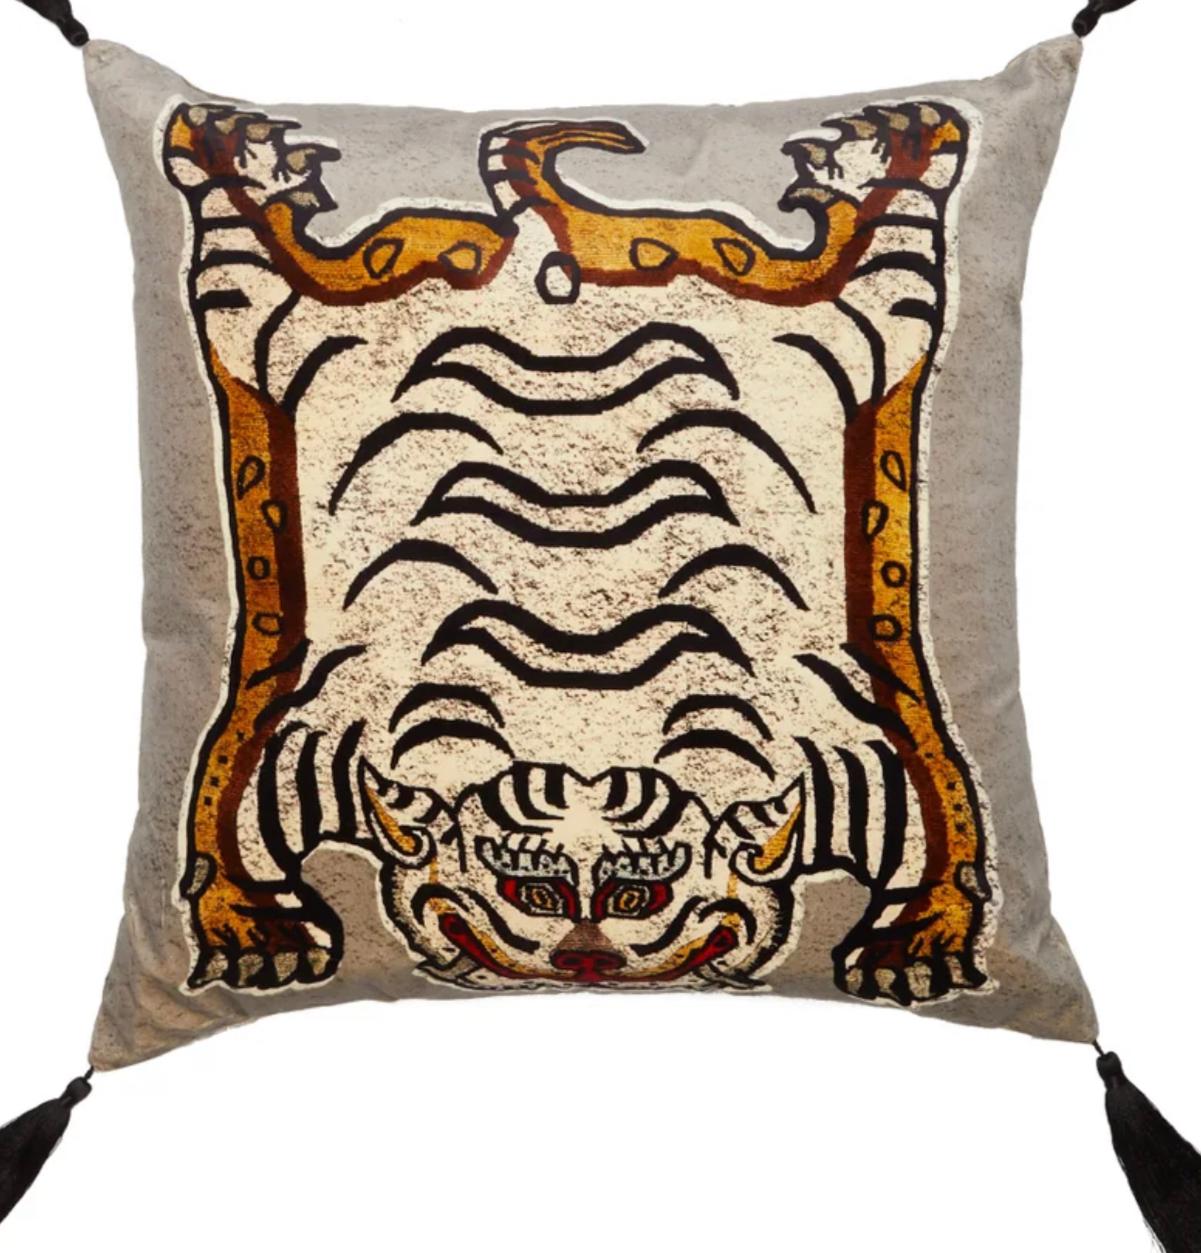 House of Hackney greift bei diesem grauen Tigris-Kissen, das mit einem balinesischen Tiger-Print verziert ist, auf fernöstliche Referenzen zurück. Sie wird im Vereinigten Königreich aus plüschigem Baumwollsamt hergestellt, ist mit reichlich Wolle